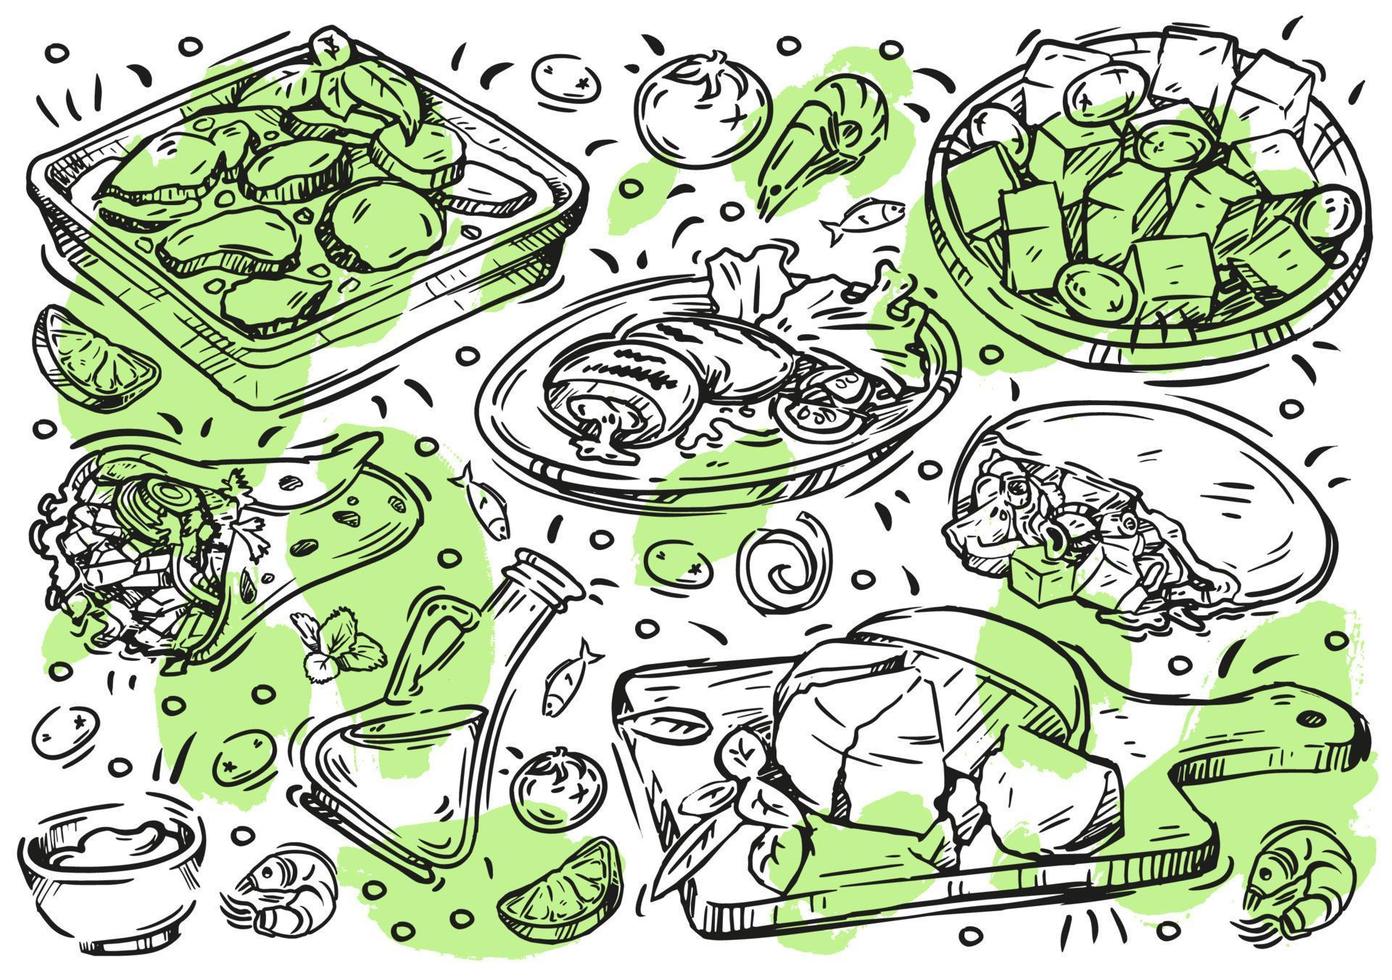 comida de ilustración de vector de línea dibujada a mano. doodle cocina griega en pizarra blanca, aceitunas y aceite de oliva, moussaka, carne a la parrilla, giroscopios, souvlaki, hummus, queso, ensalada griega, salsa